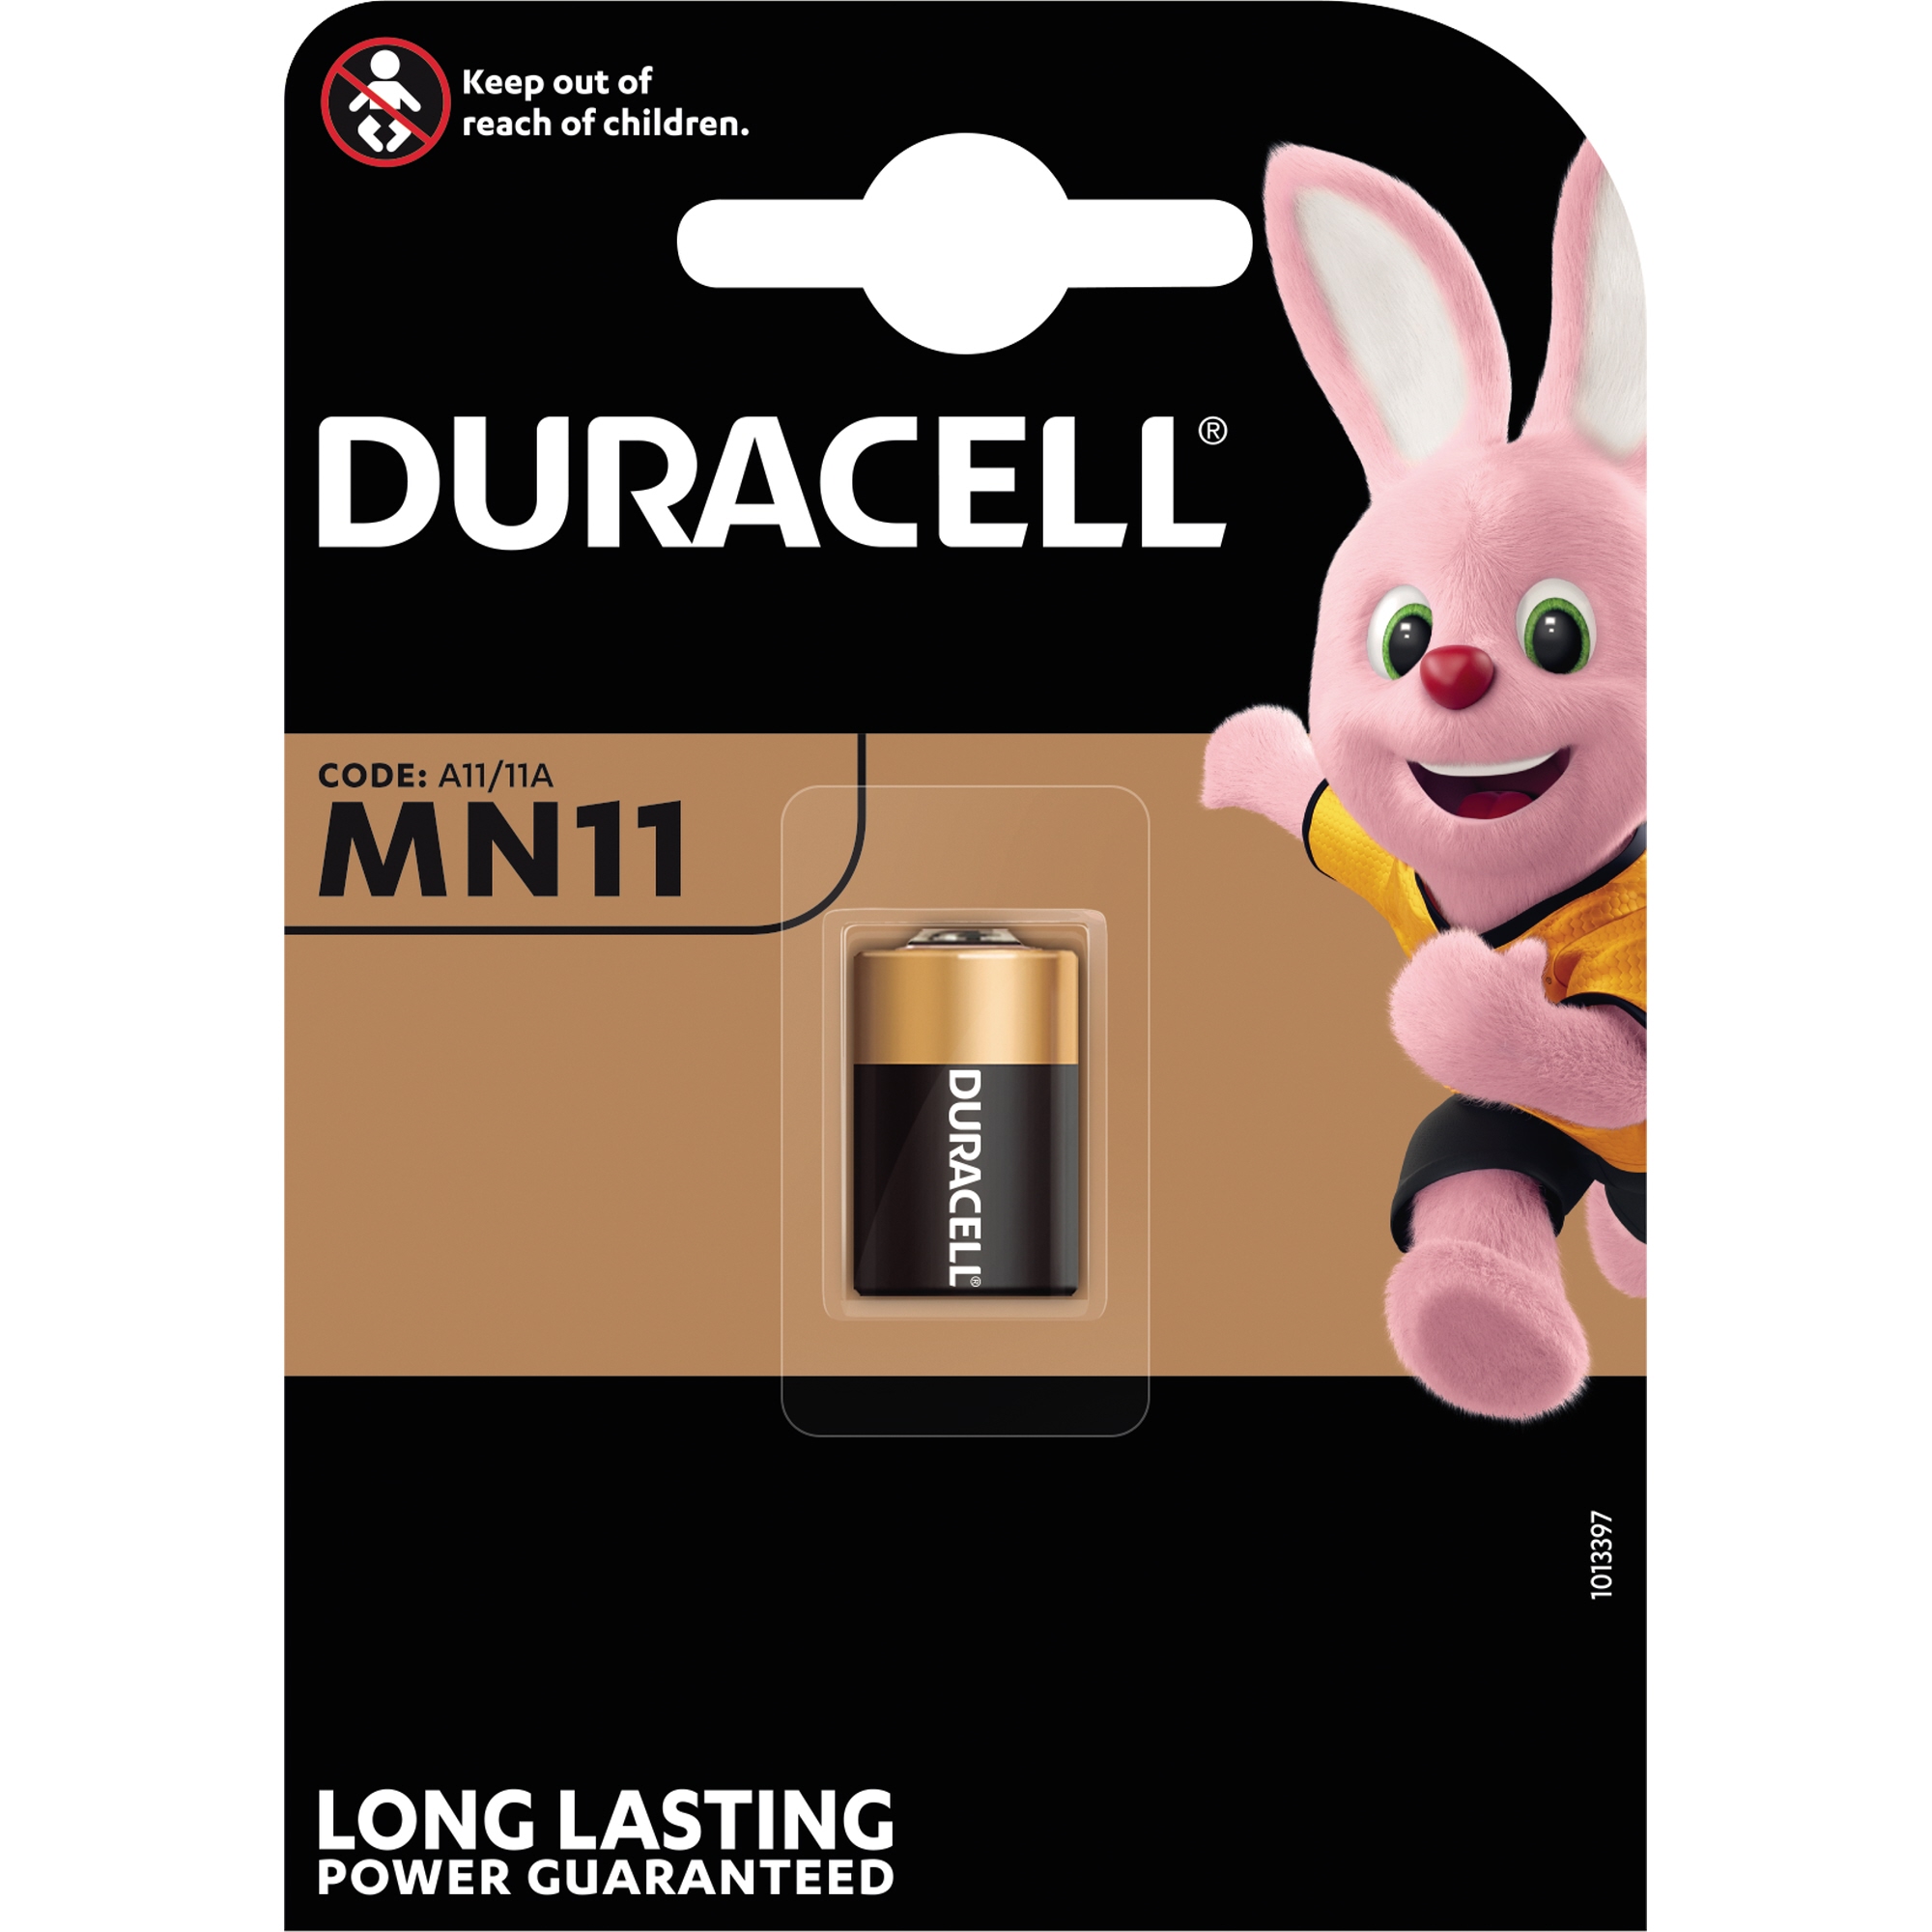 DURACELL Batterie Alkaline Security 015142 MN11 6V Retail Blister